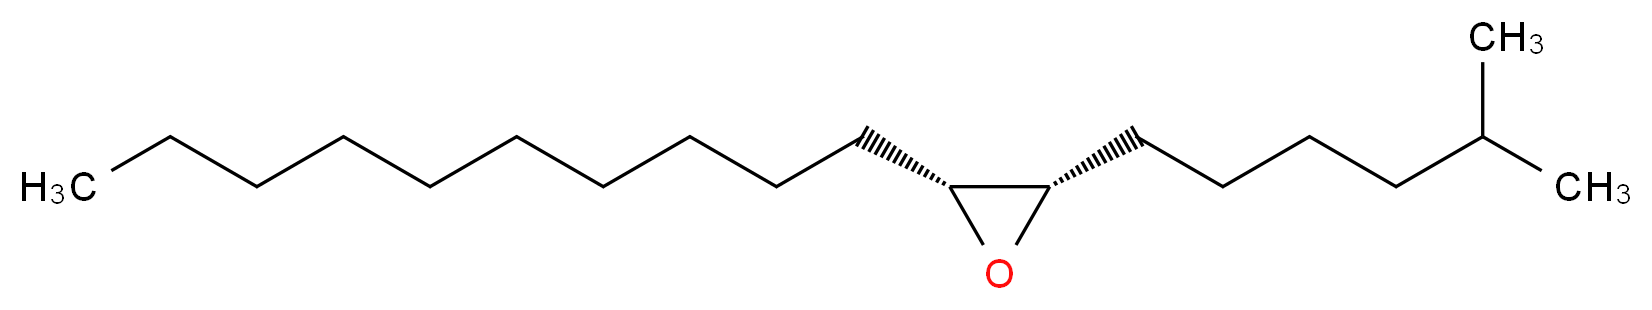 顺式-7,8-环氧-2-甲基十八烷_分子结构_CAS_29804-22-6)